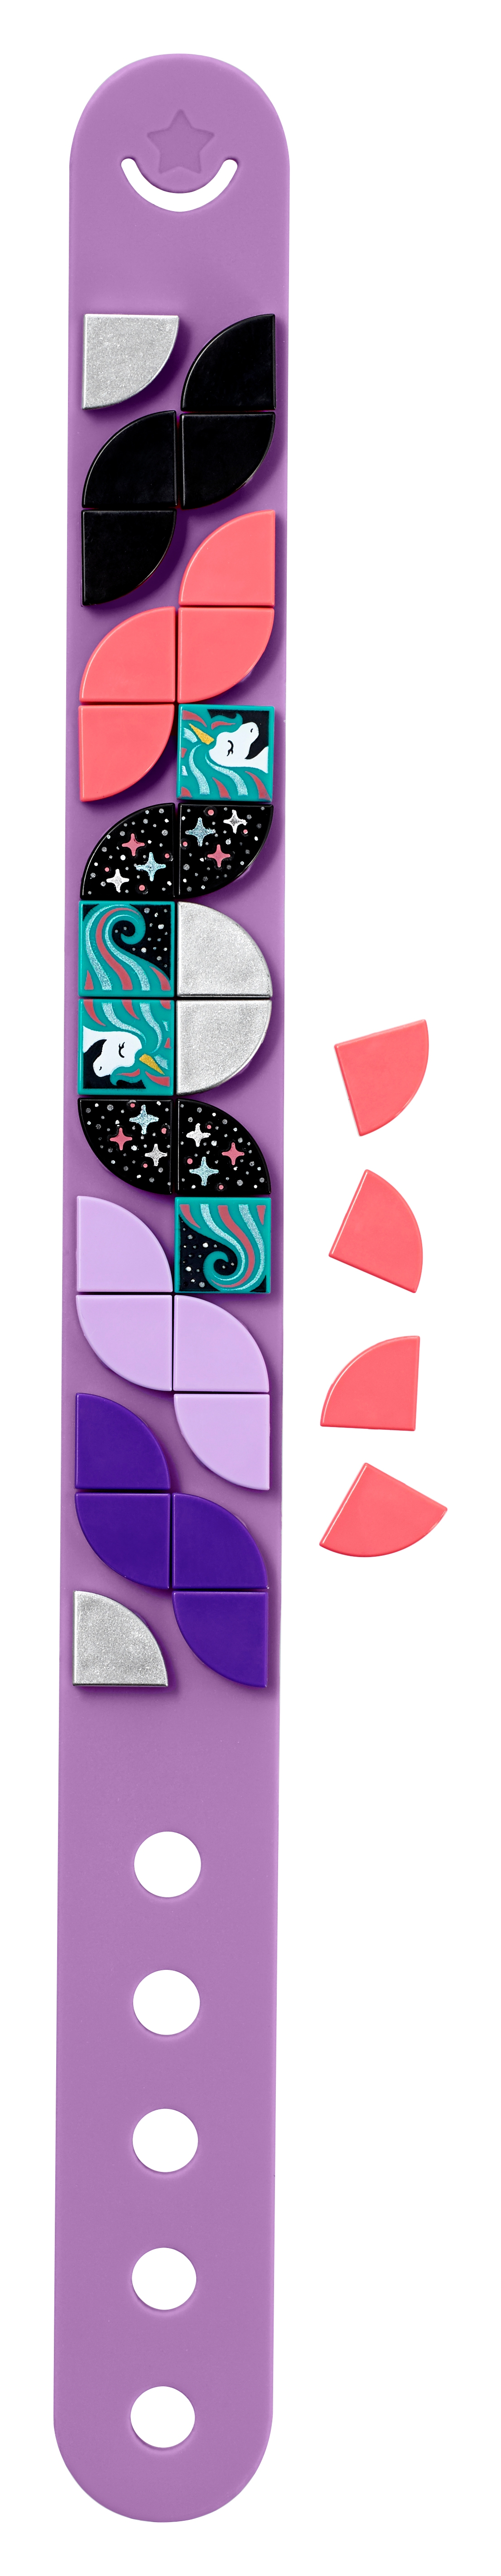 Set Bigiotteria Fai da Te Marca: LEGOLEGO Dots Braccialetto Unicorno Scintillante 41902 Kit Artistici per Bambini Idea Regalo 